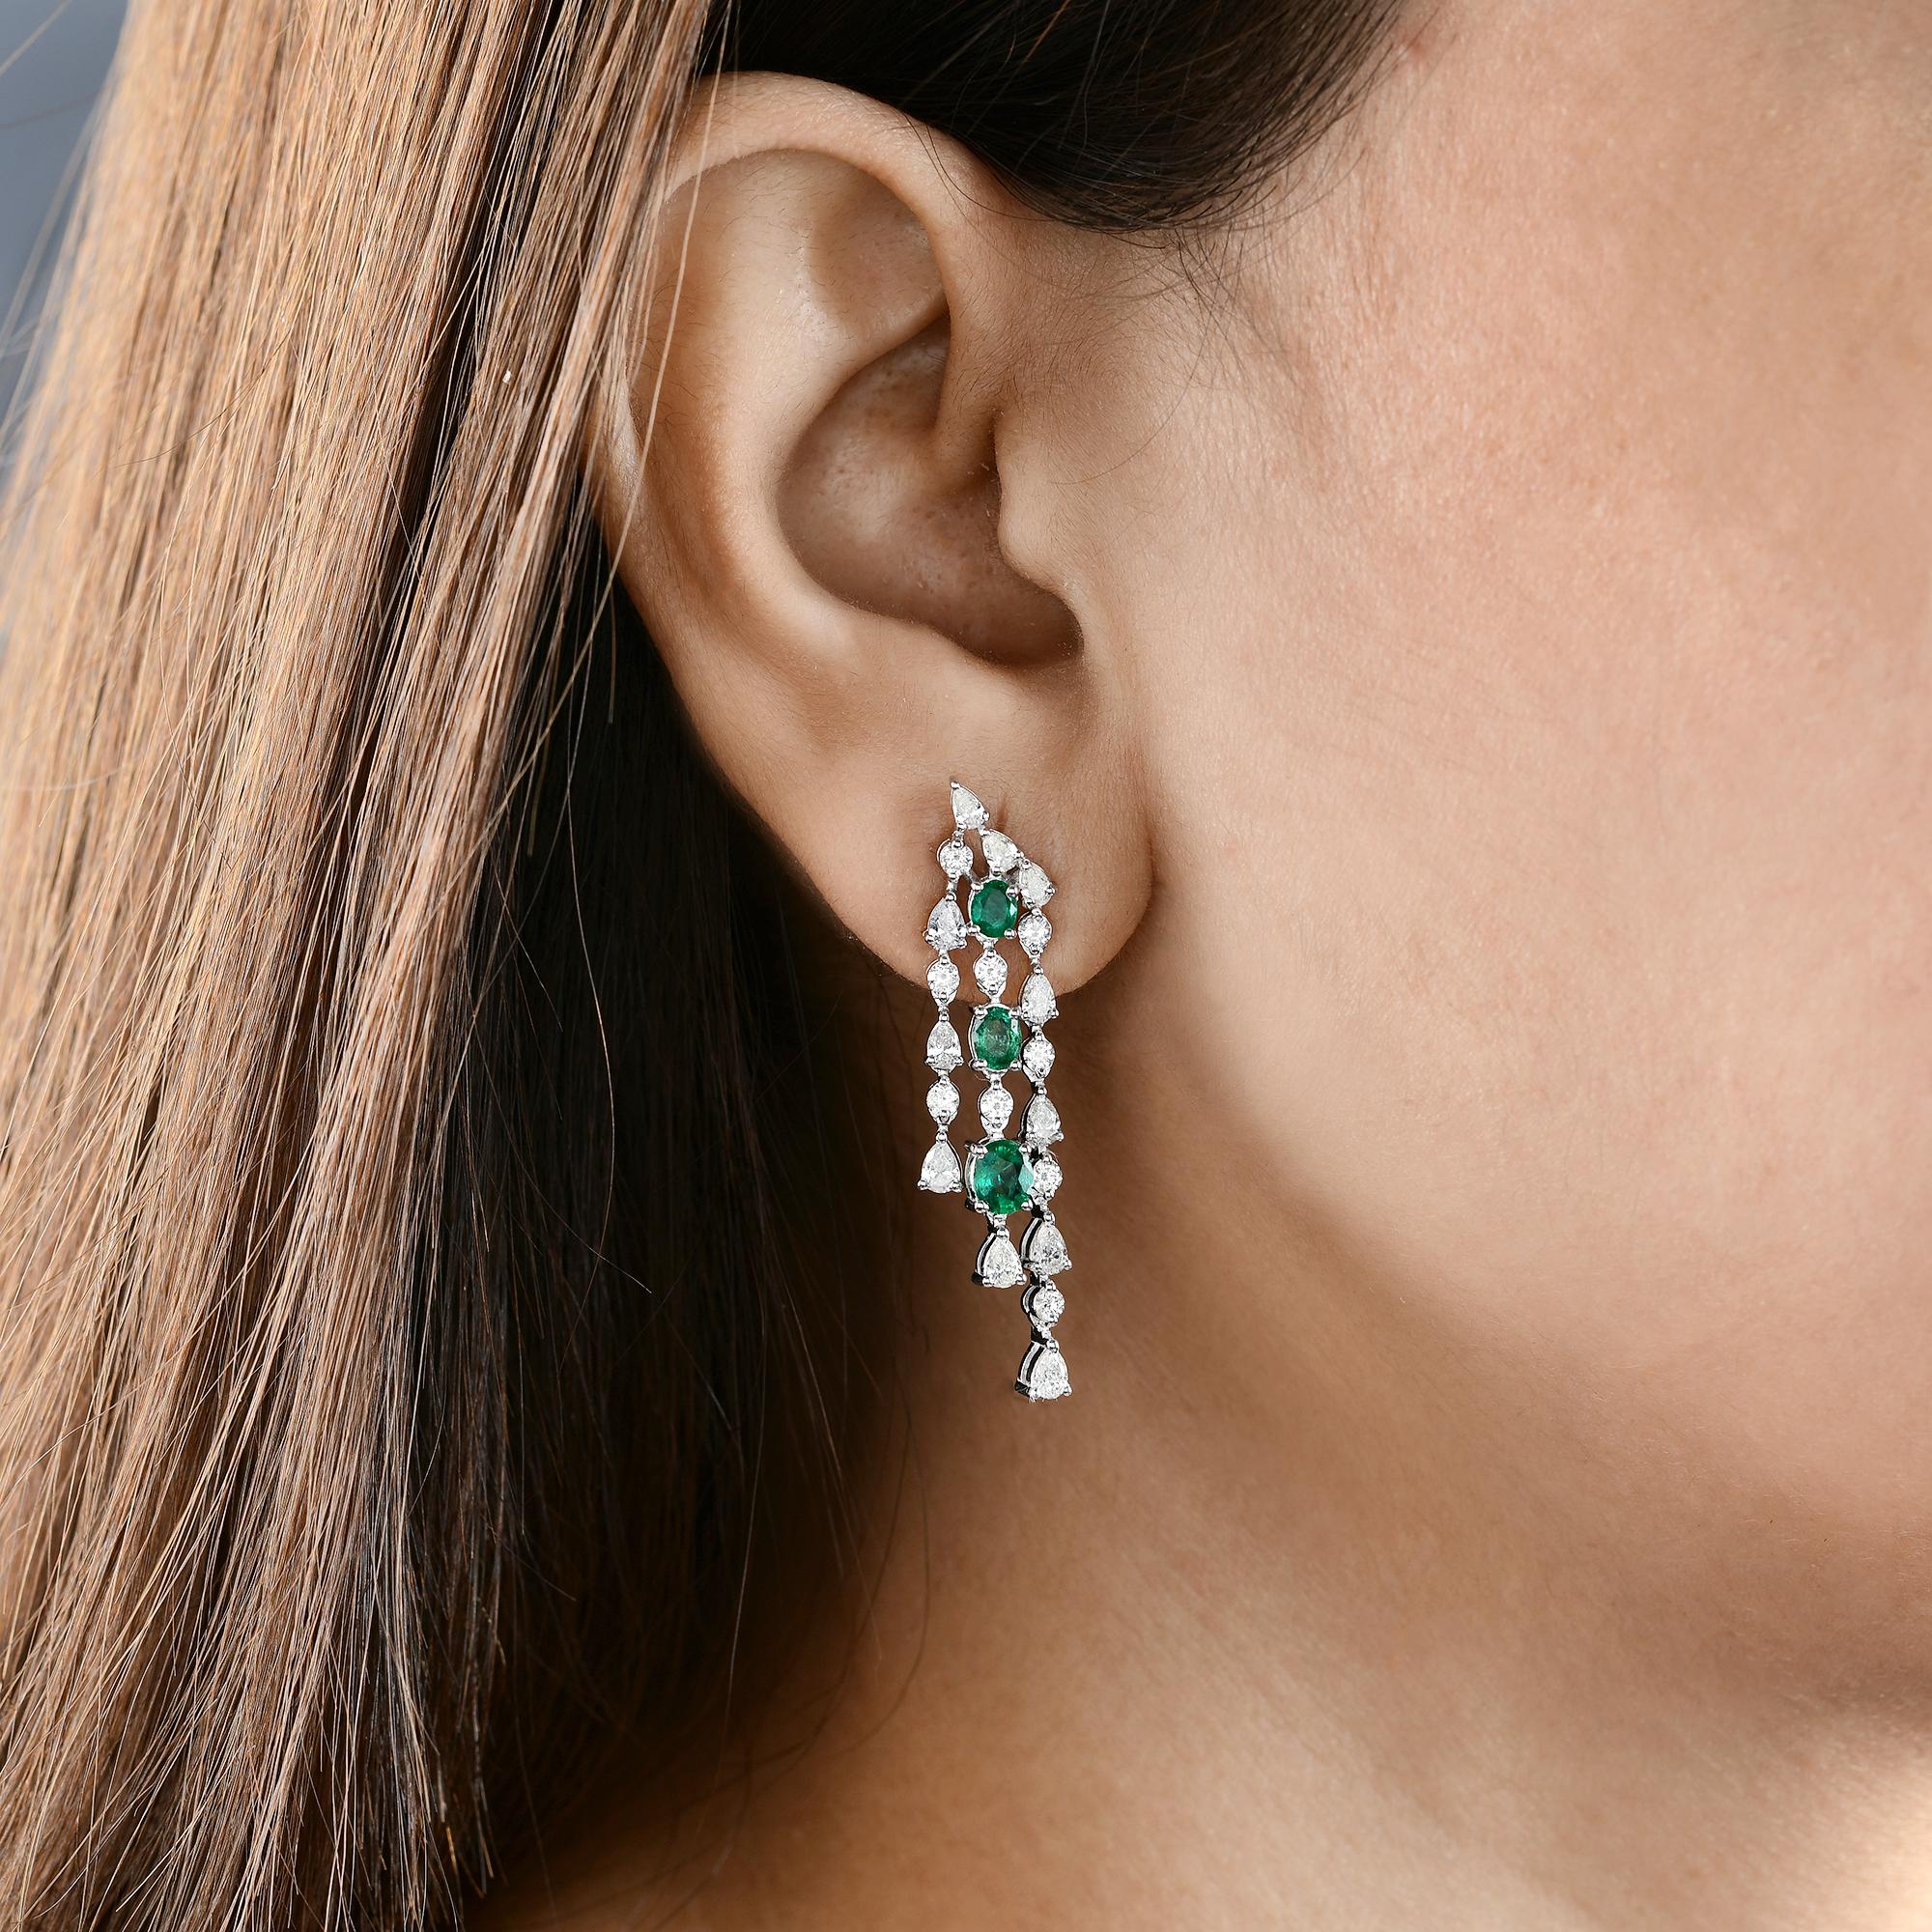 Oval Cut Zambian Emerald Gemstone Chandelier Earrings Diamond 18 Karat White Gold Jewelry For Sale